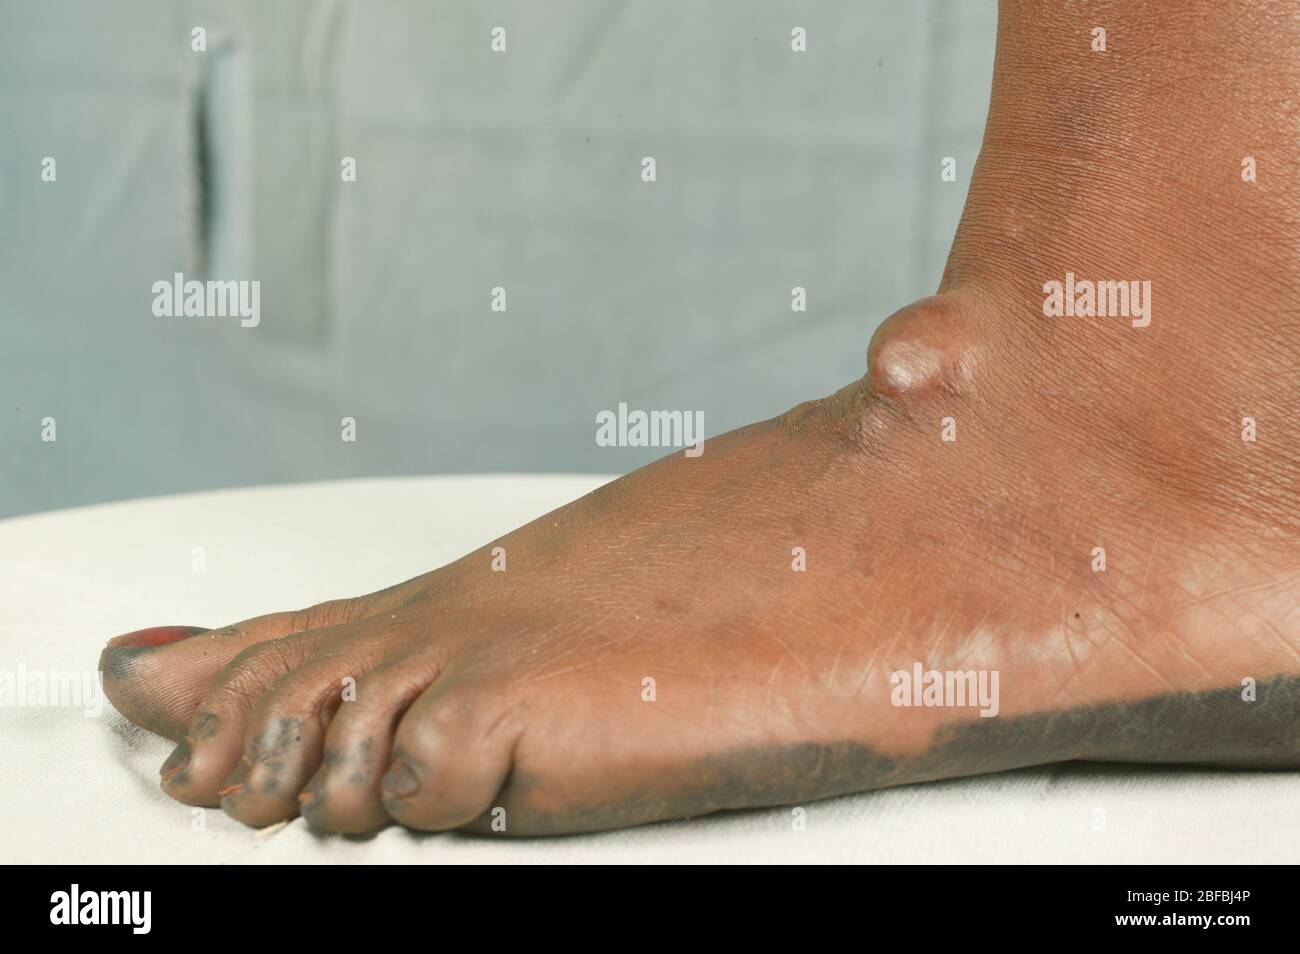 Ein Paitent mit einer Talgzyste am Fuß. Talgzysten sind häufige nicht krebsartige Zysten der Haut. Zysten sind Anomalien im Körper, dass ma Stockfoto